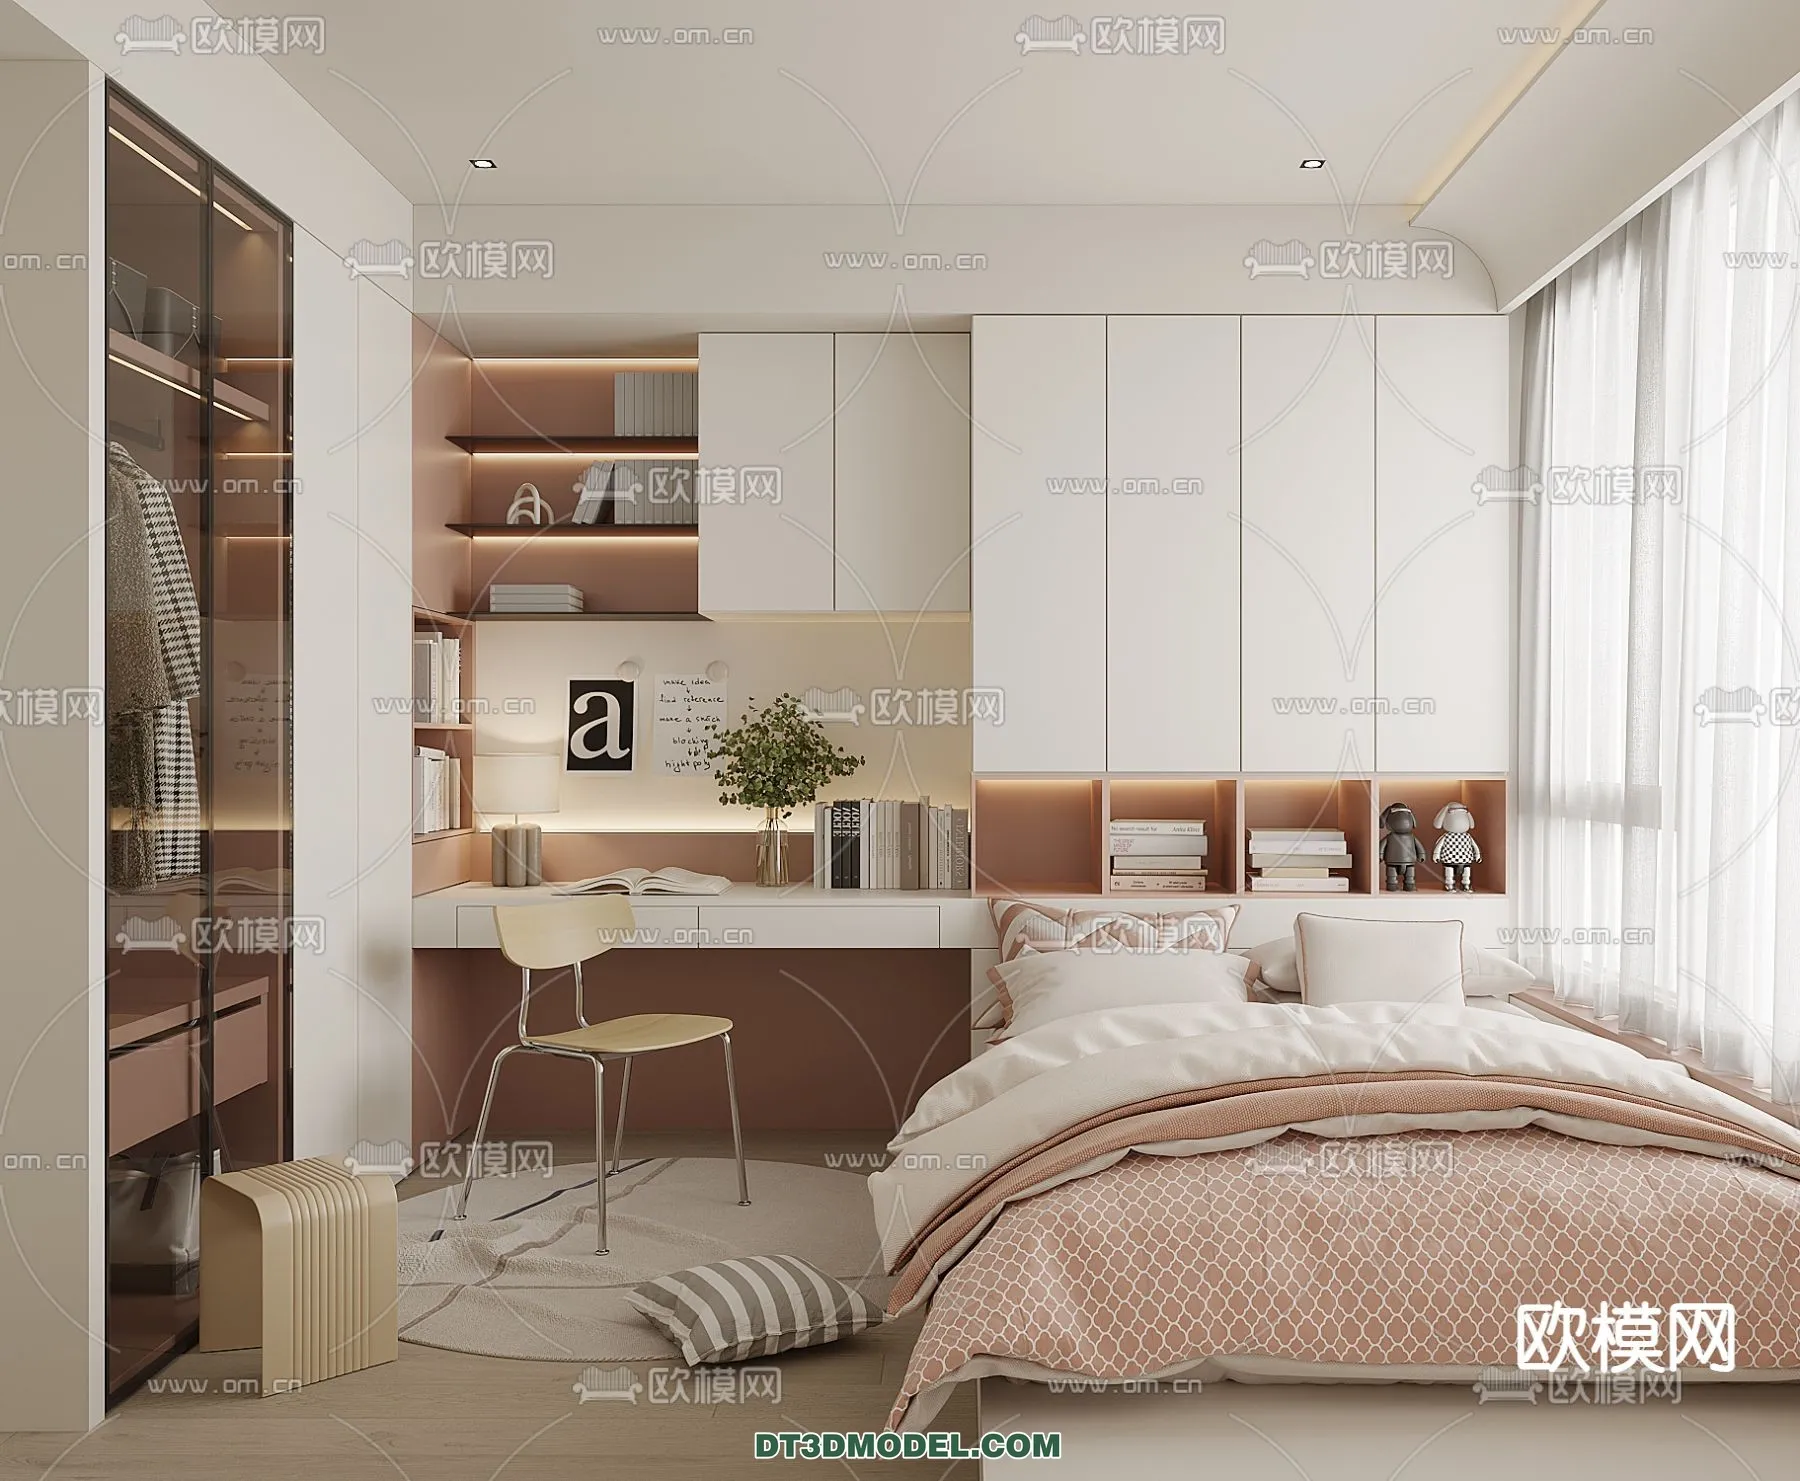 Tatami Bedroom – Japan Bedroom – 3D Scene – 085